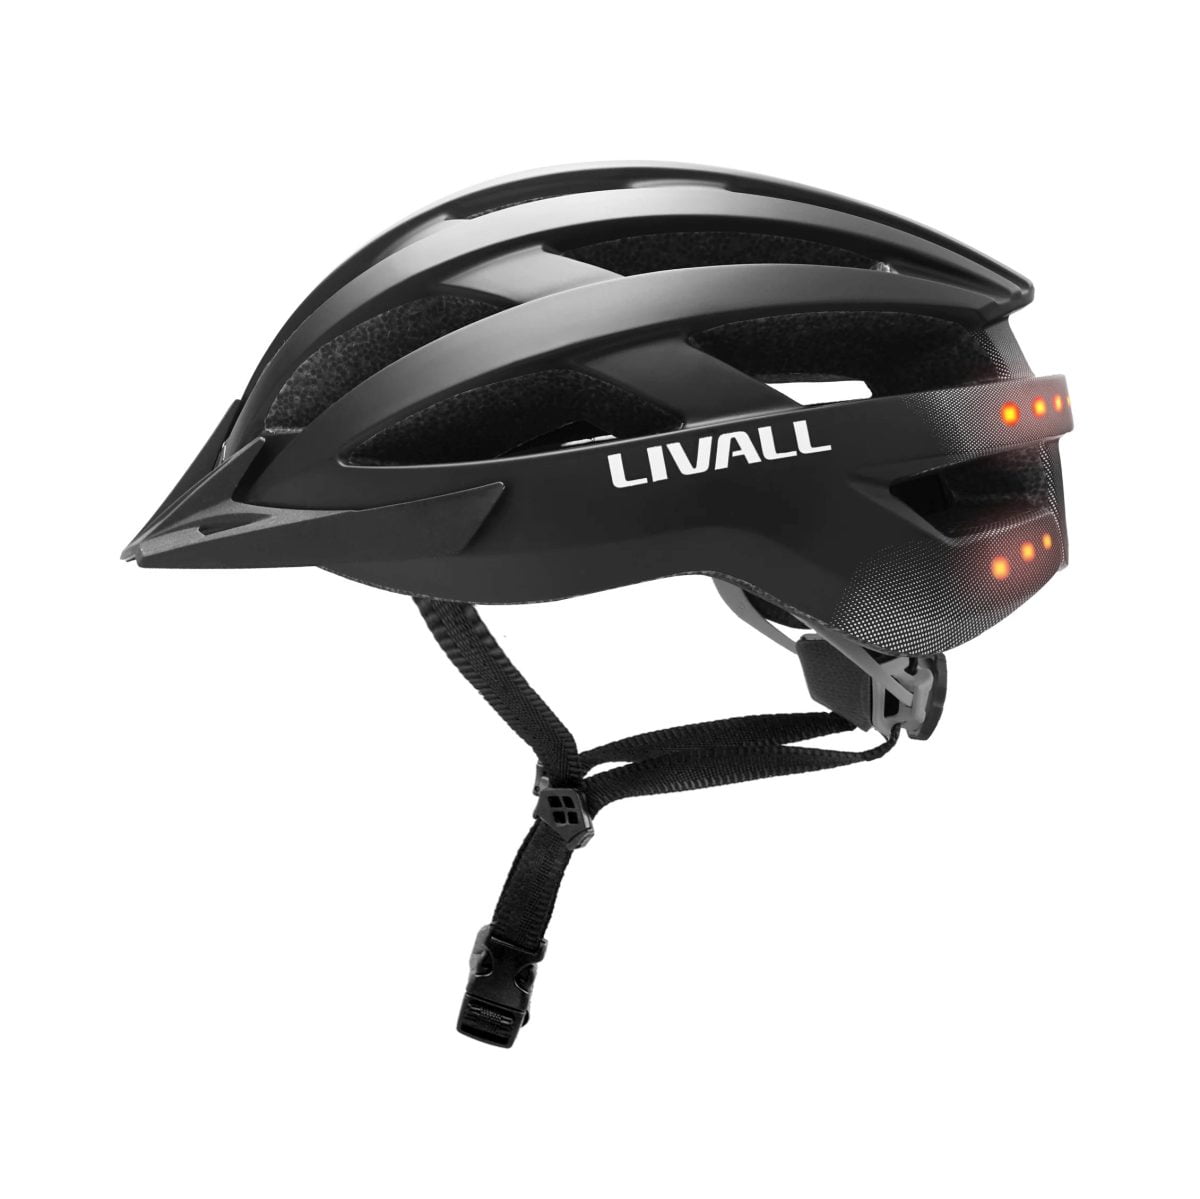 Livall Mt1 Bling Helmet Best For Mountian Biking ,Size:54-58 Cm, Matt Black